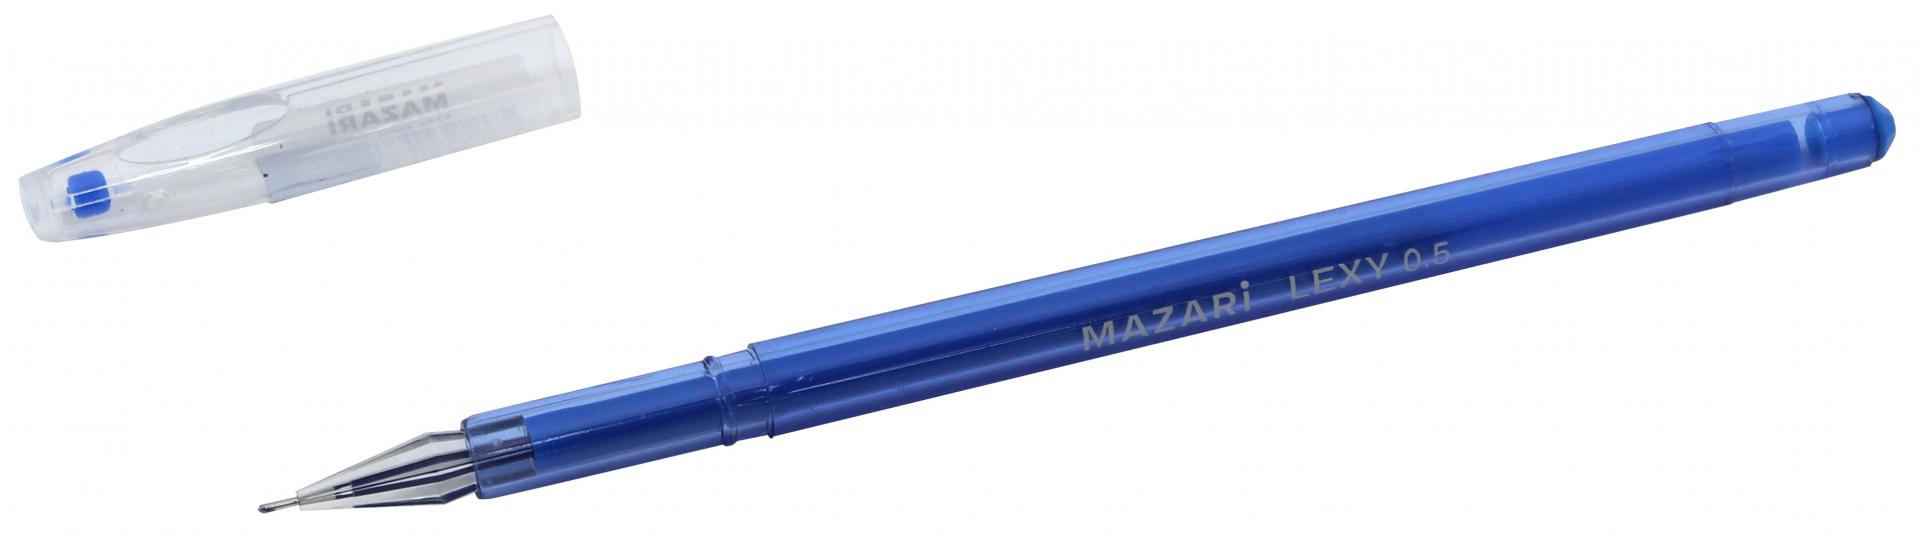 Иллюстрация 1 из 5 для Ручка гелевая "LEXY" (синяя, 0.5 мм) (М-5507) | Лабиринт - канцтовы. Источник: Лабиринт